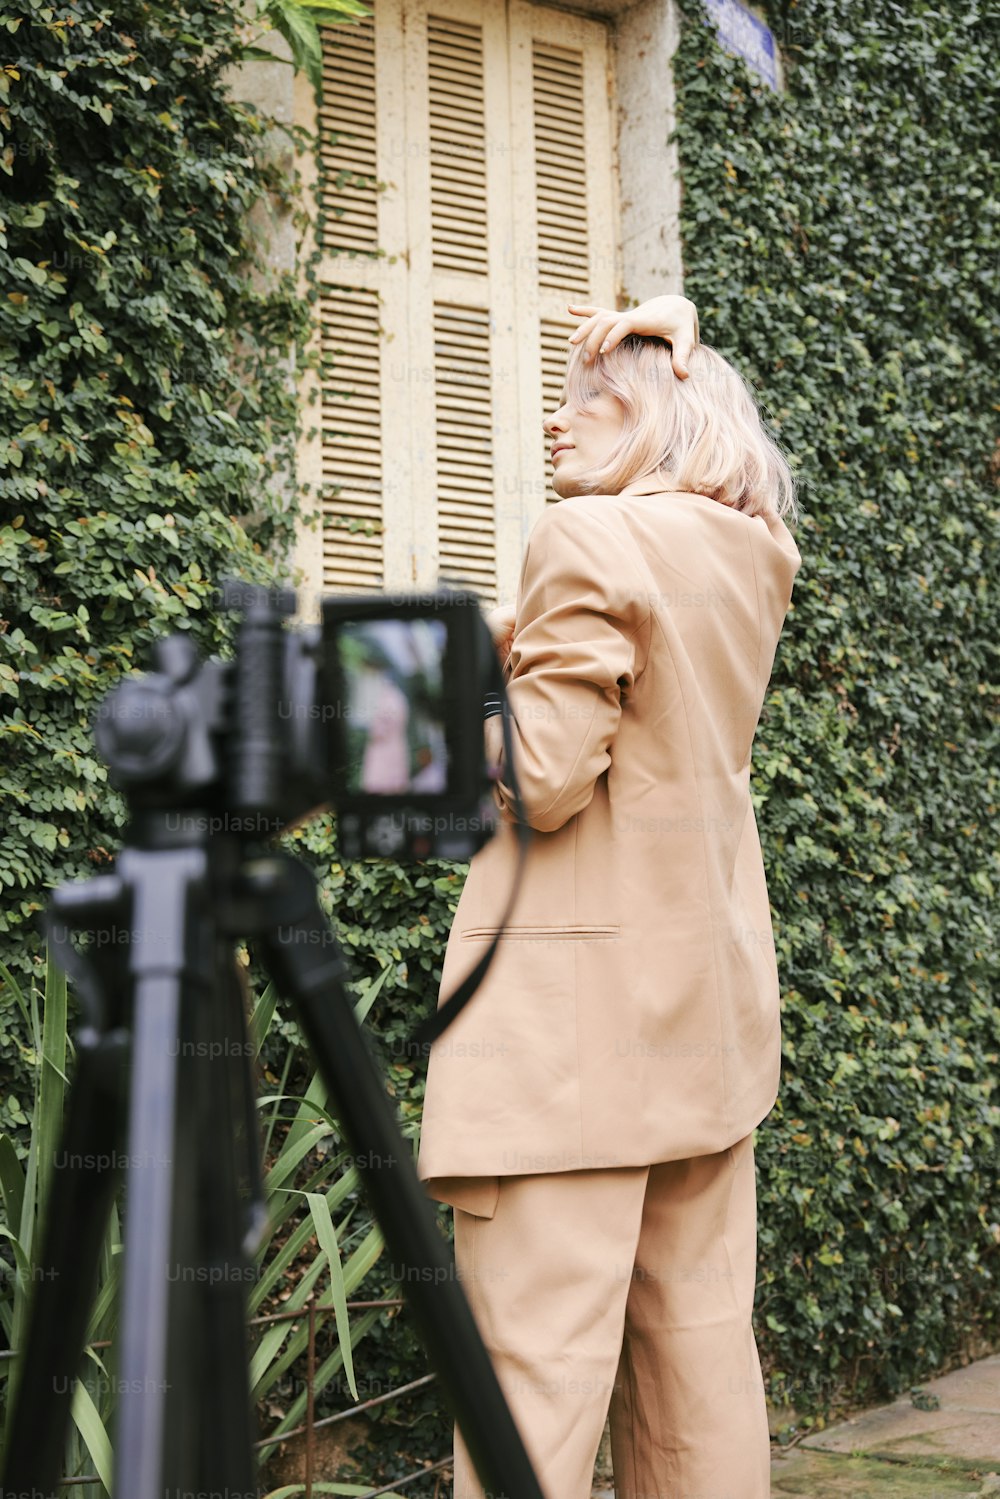 Una mujer parada frente a una cámara tomando una foto